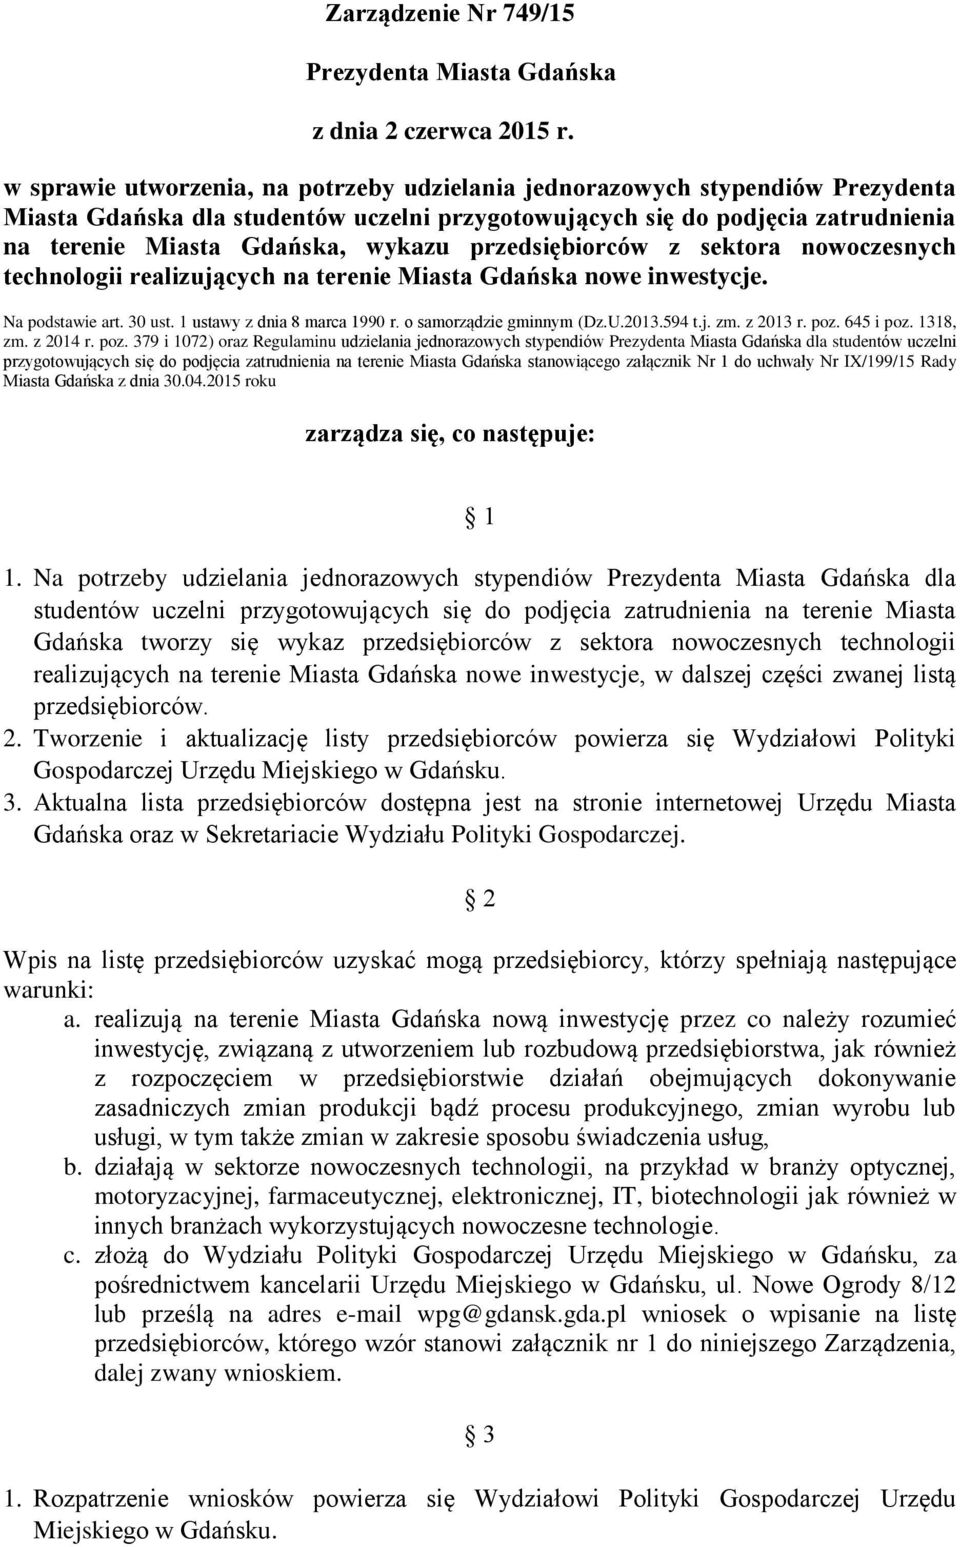 przedsiębiorców z sektora nowoczesnych technologii realizujących na terenie Miasta Gdańska nowe inwestycje. Na podstawie art. 30 ust. 1 ustawy z dnia 8 marca 1990 r. o samorządzie gminnym (Dz.U.2013.